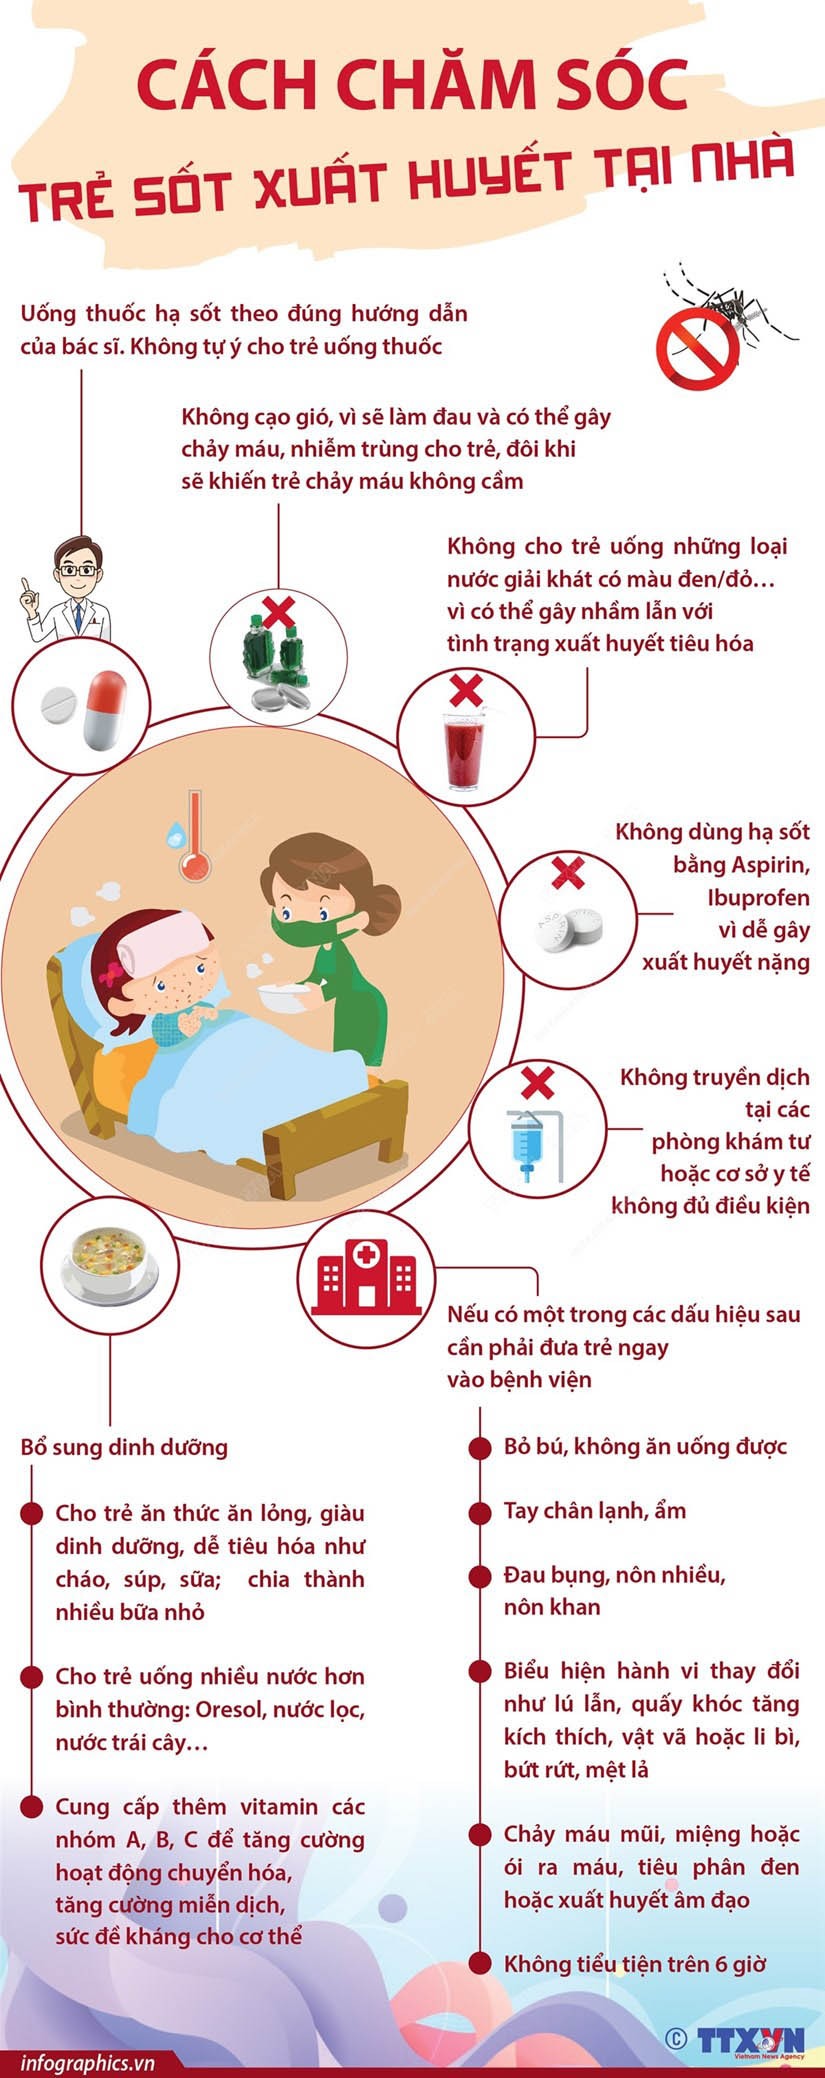 Những lưu ý khi chăm sóc trẻ sốt xuất huyết tại nhà